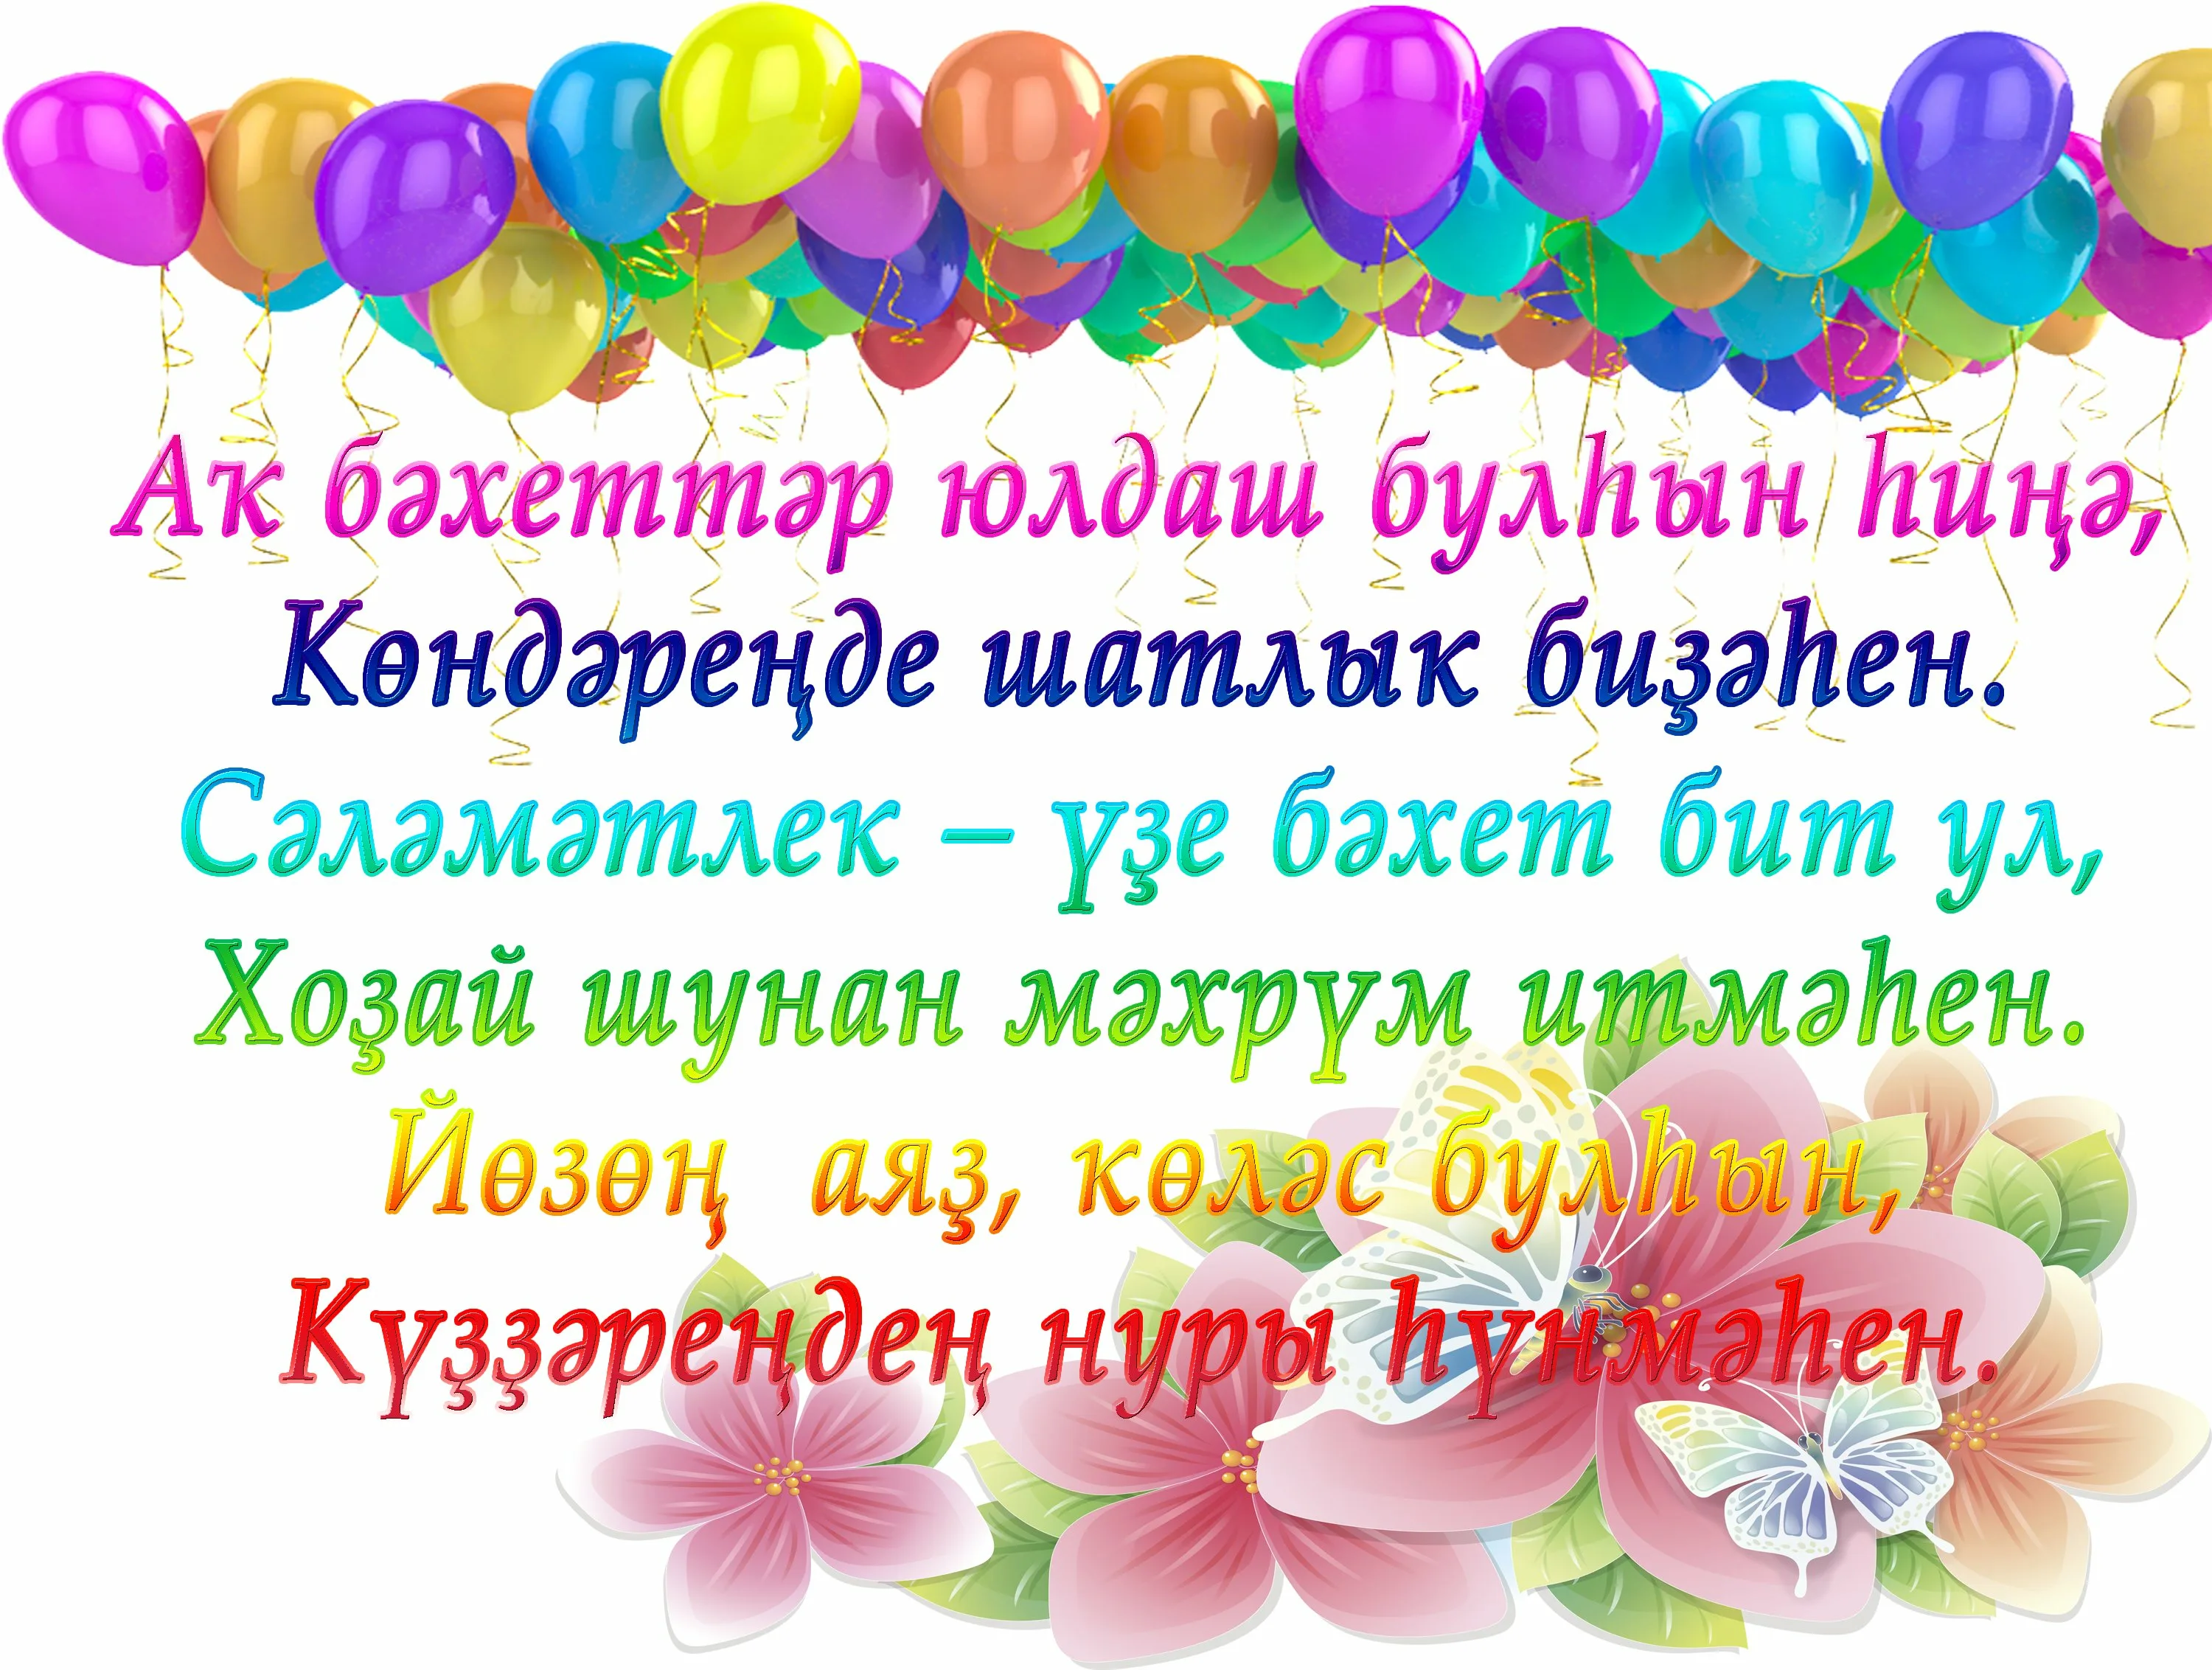 С днем рождения маме на башкирском. Поздравления с днём рождения на башкирском. Поздравления с днём рождения на башкирском языке. Поздравления с днём на башкирском языке. Поздравление с юбилеем на башкирском языке.